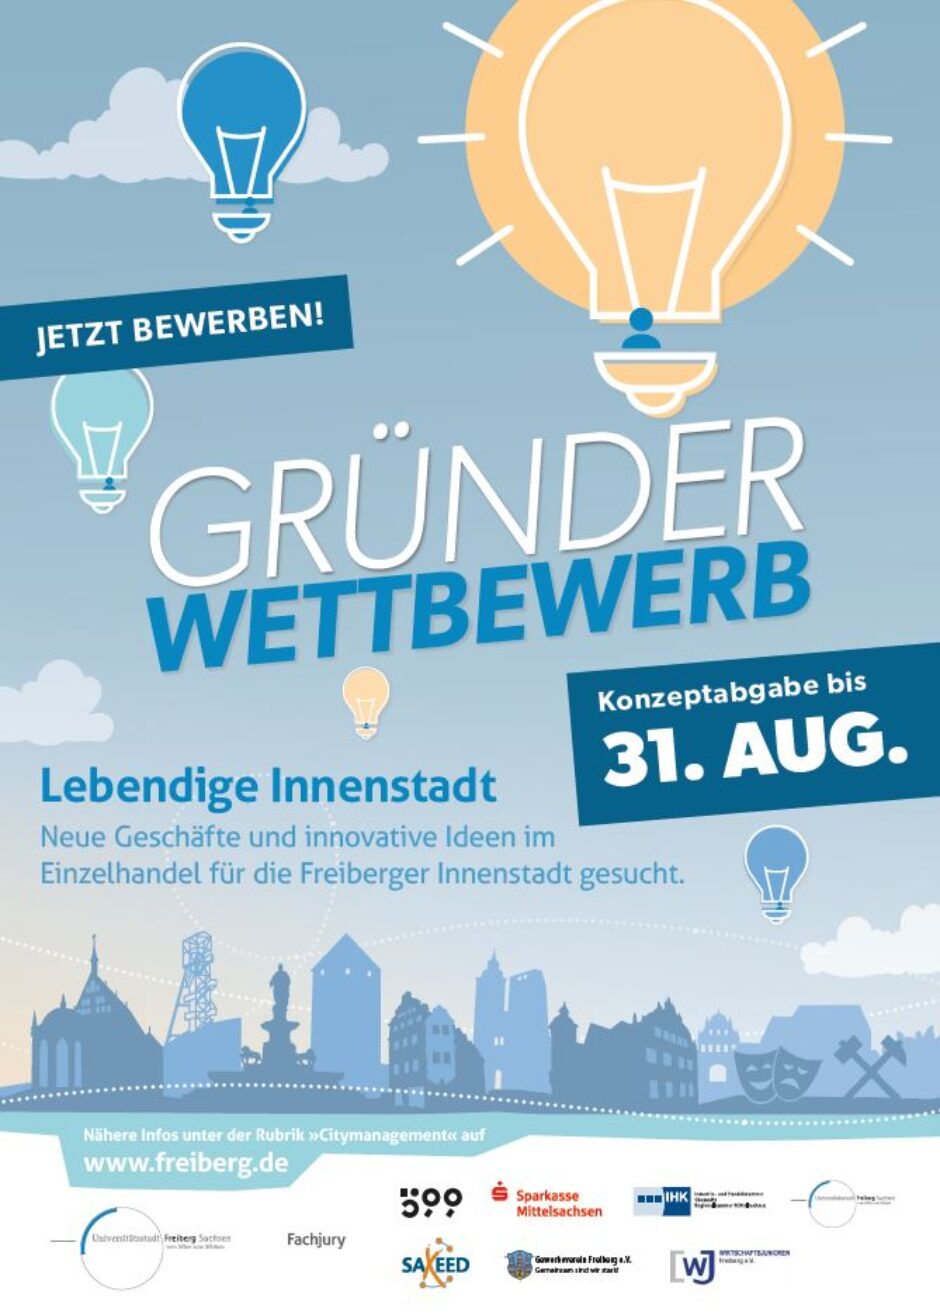 7. Gründerwettbewerb der Stadt Freiberg gestartet – Bewerbung bis 31. August möglich